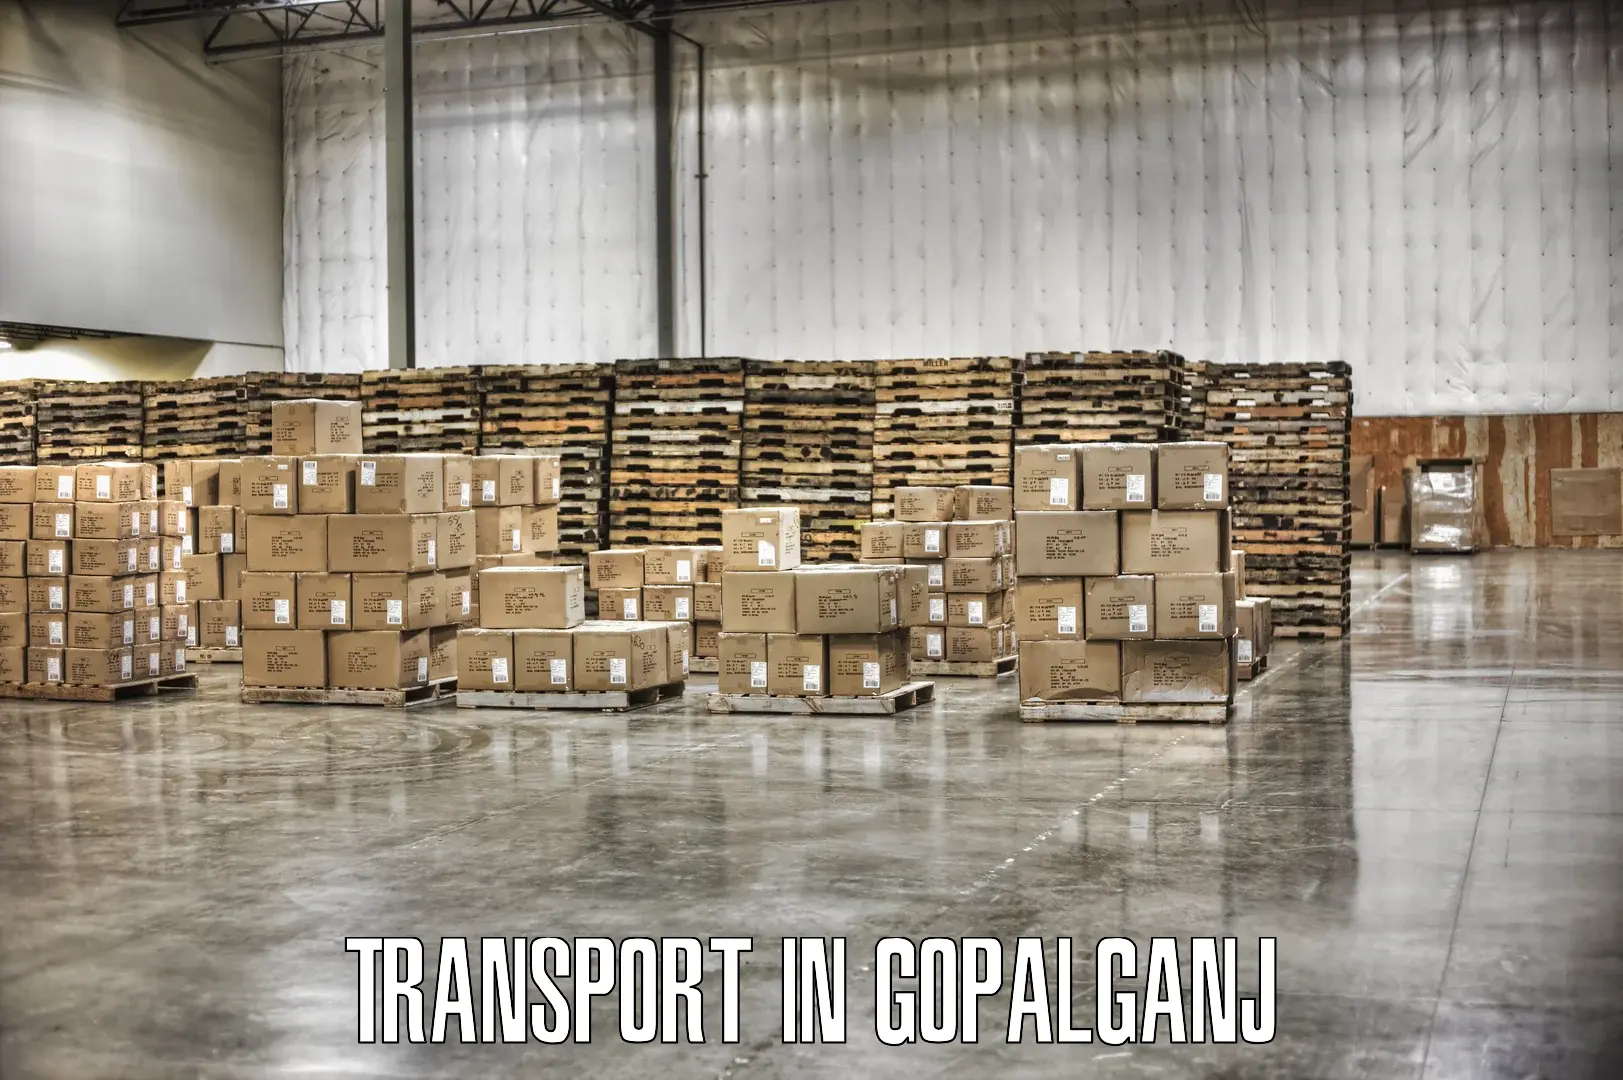 Online transport in Gopalganj